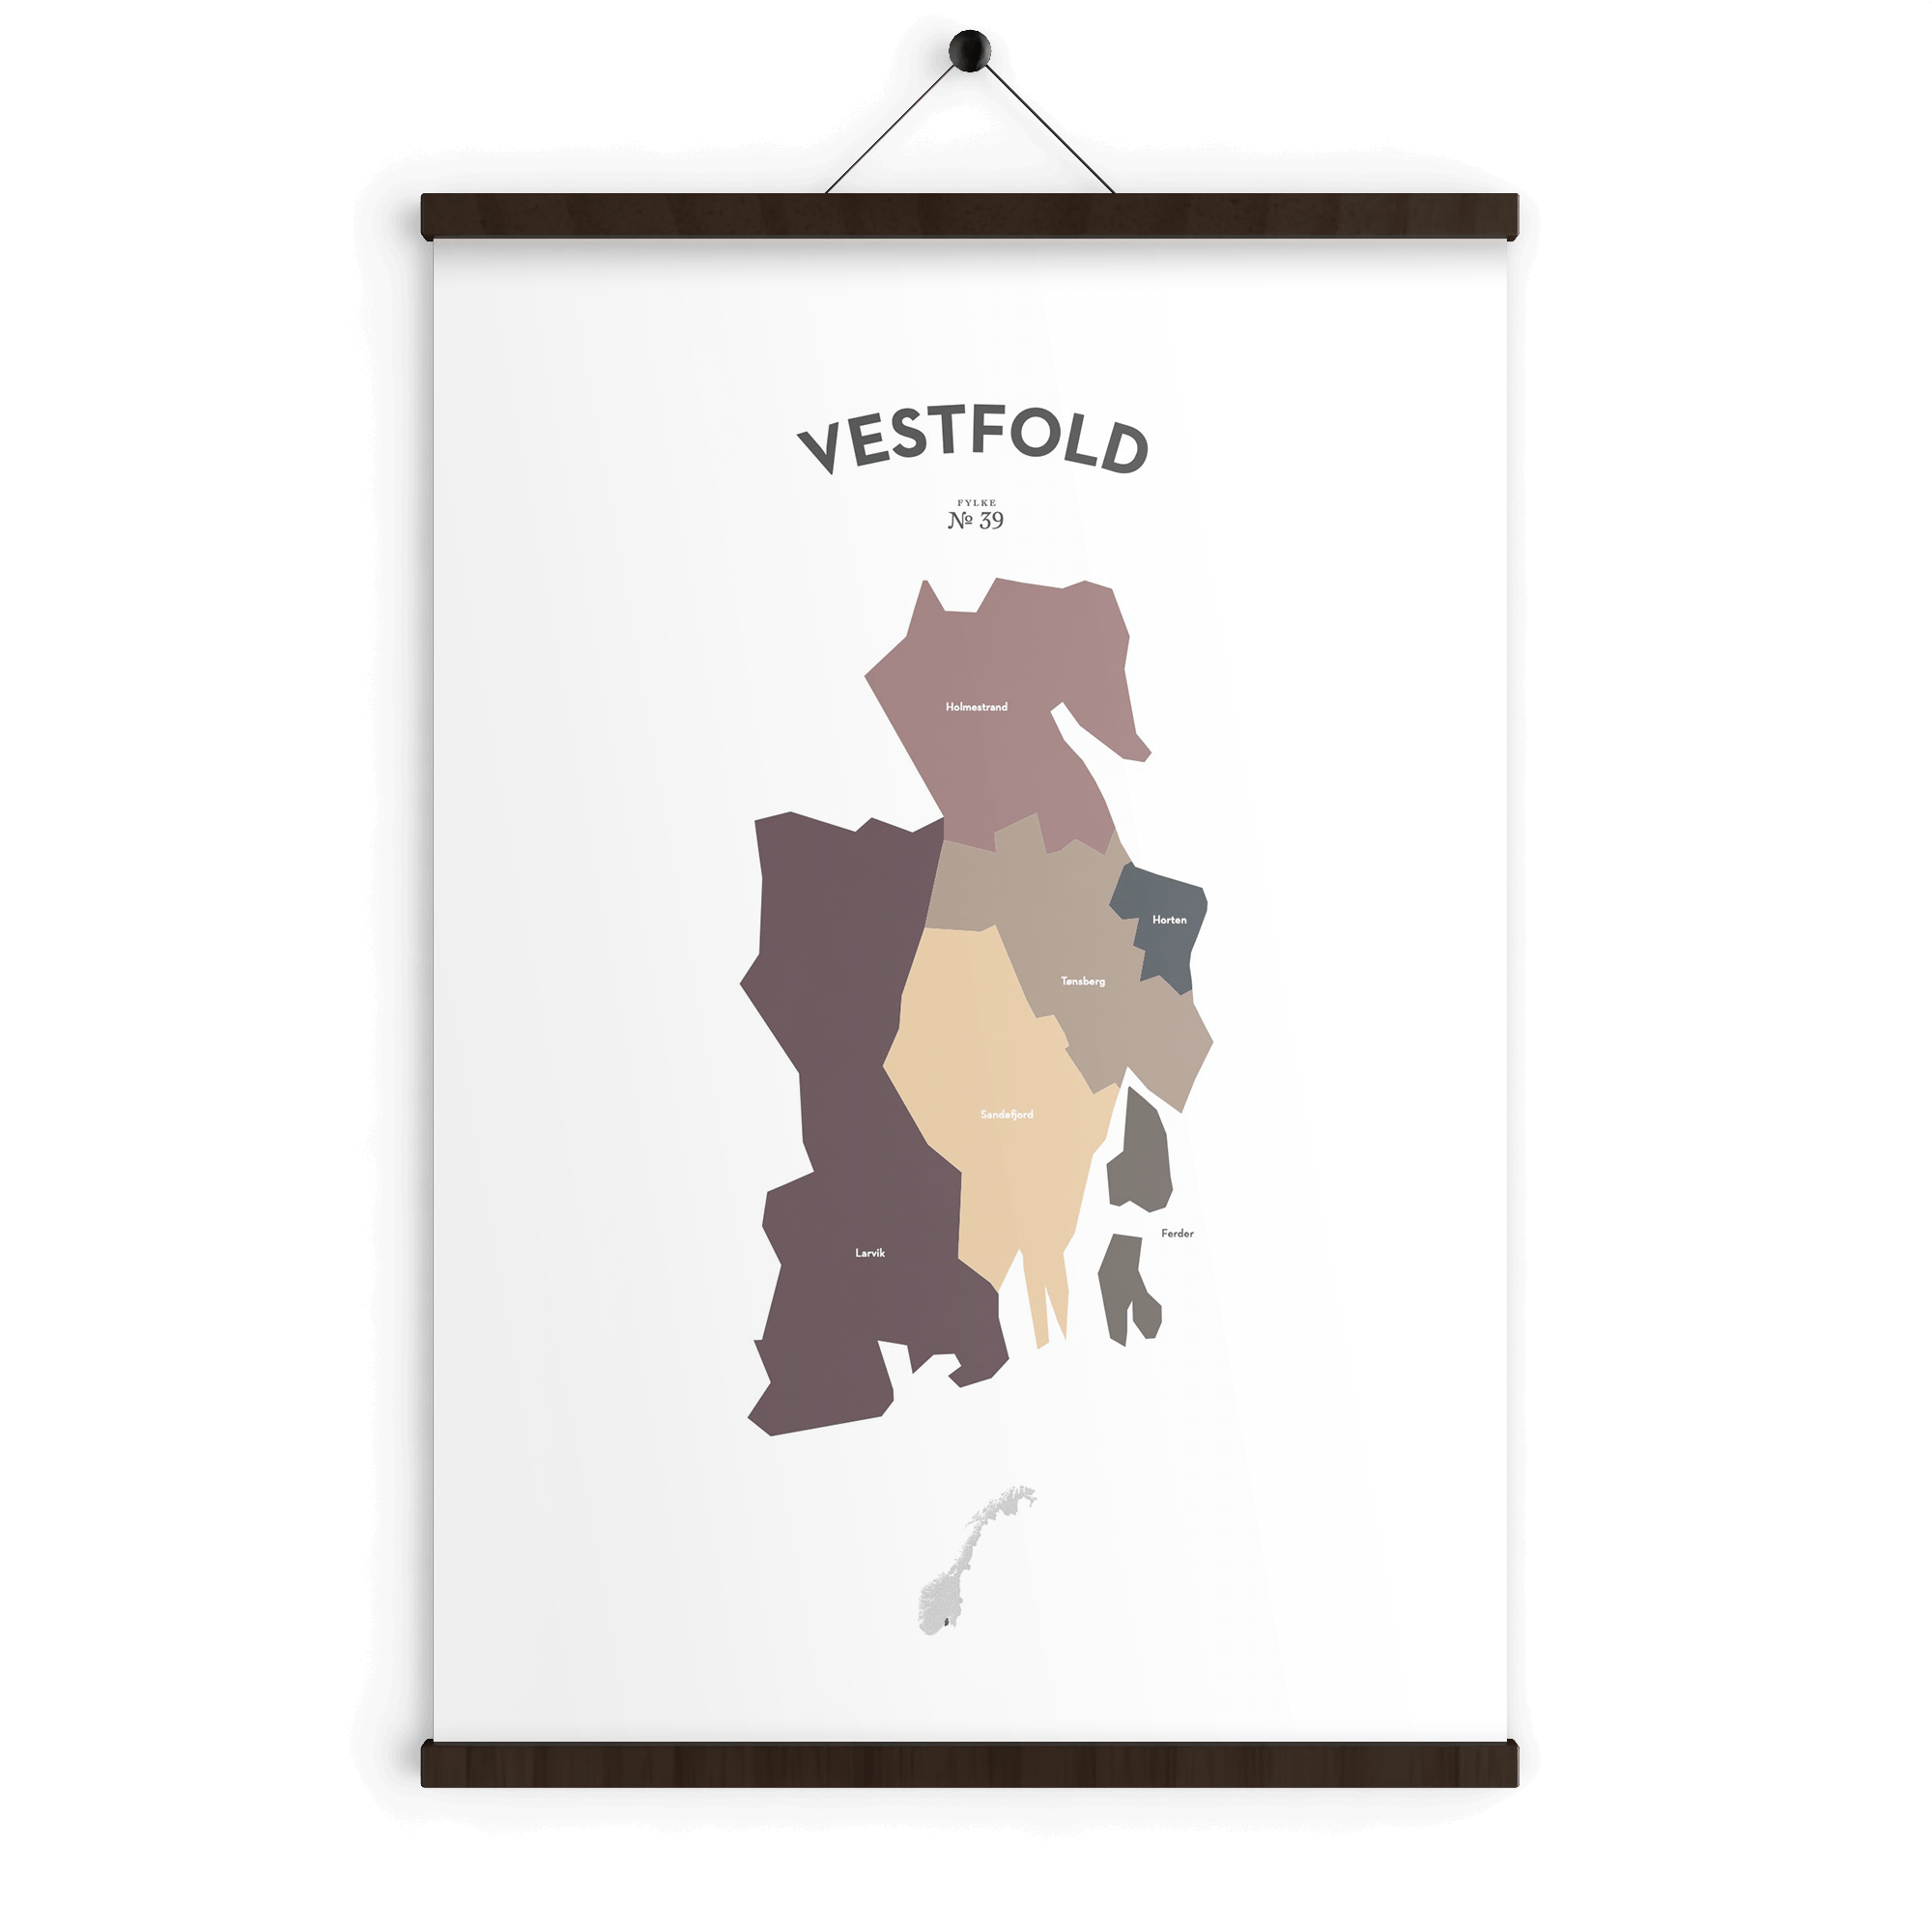 Vestfold